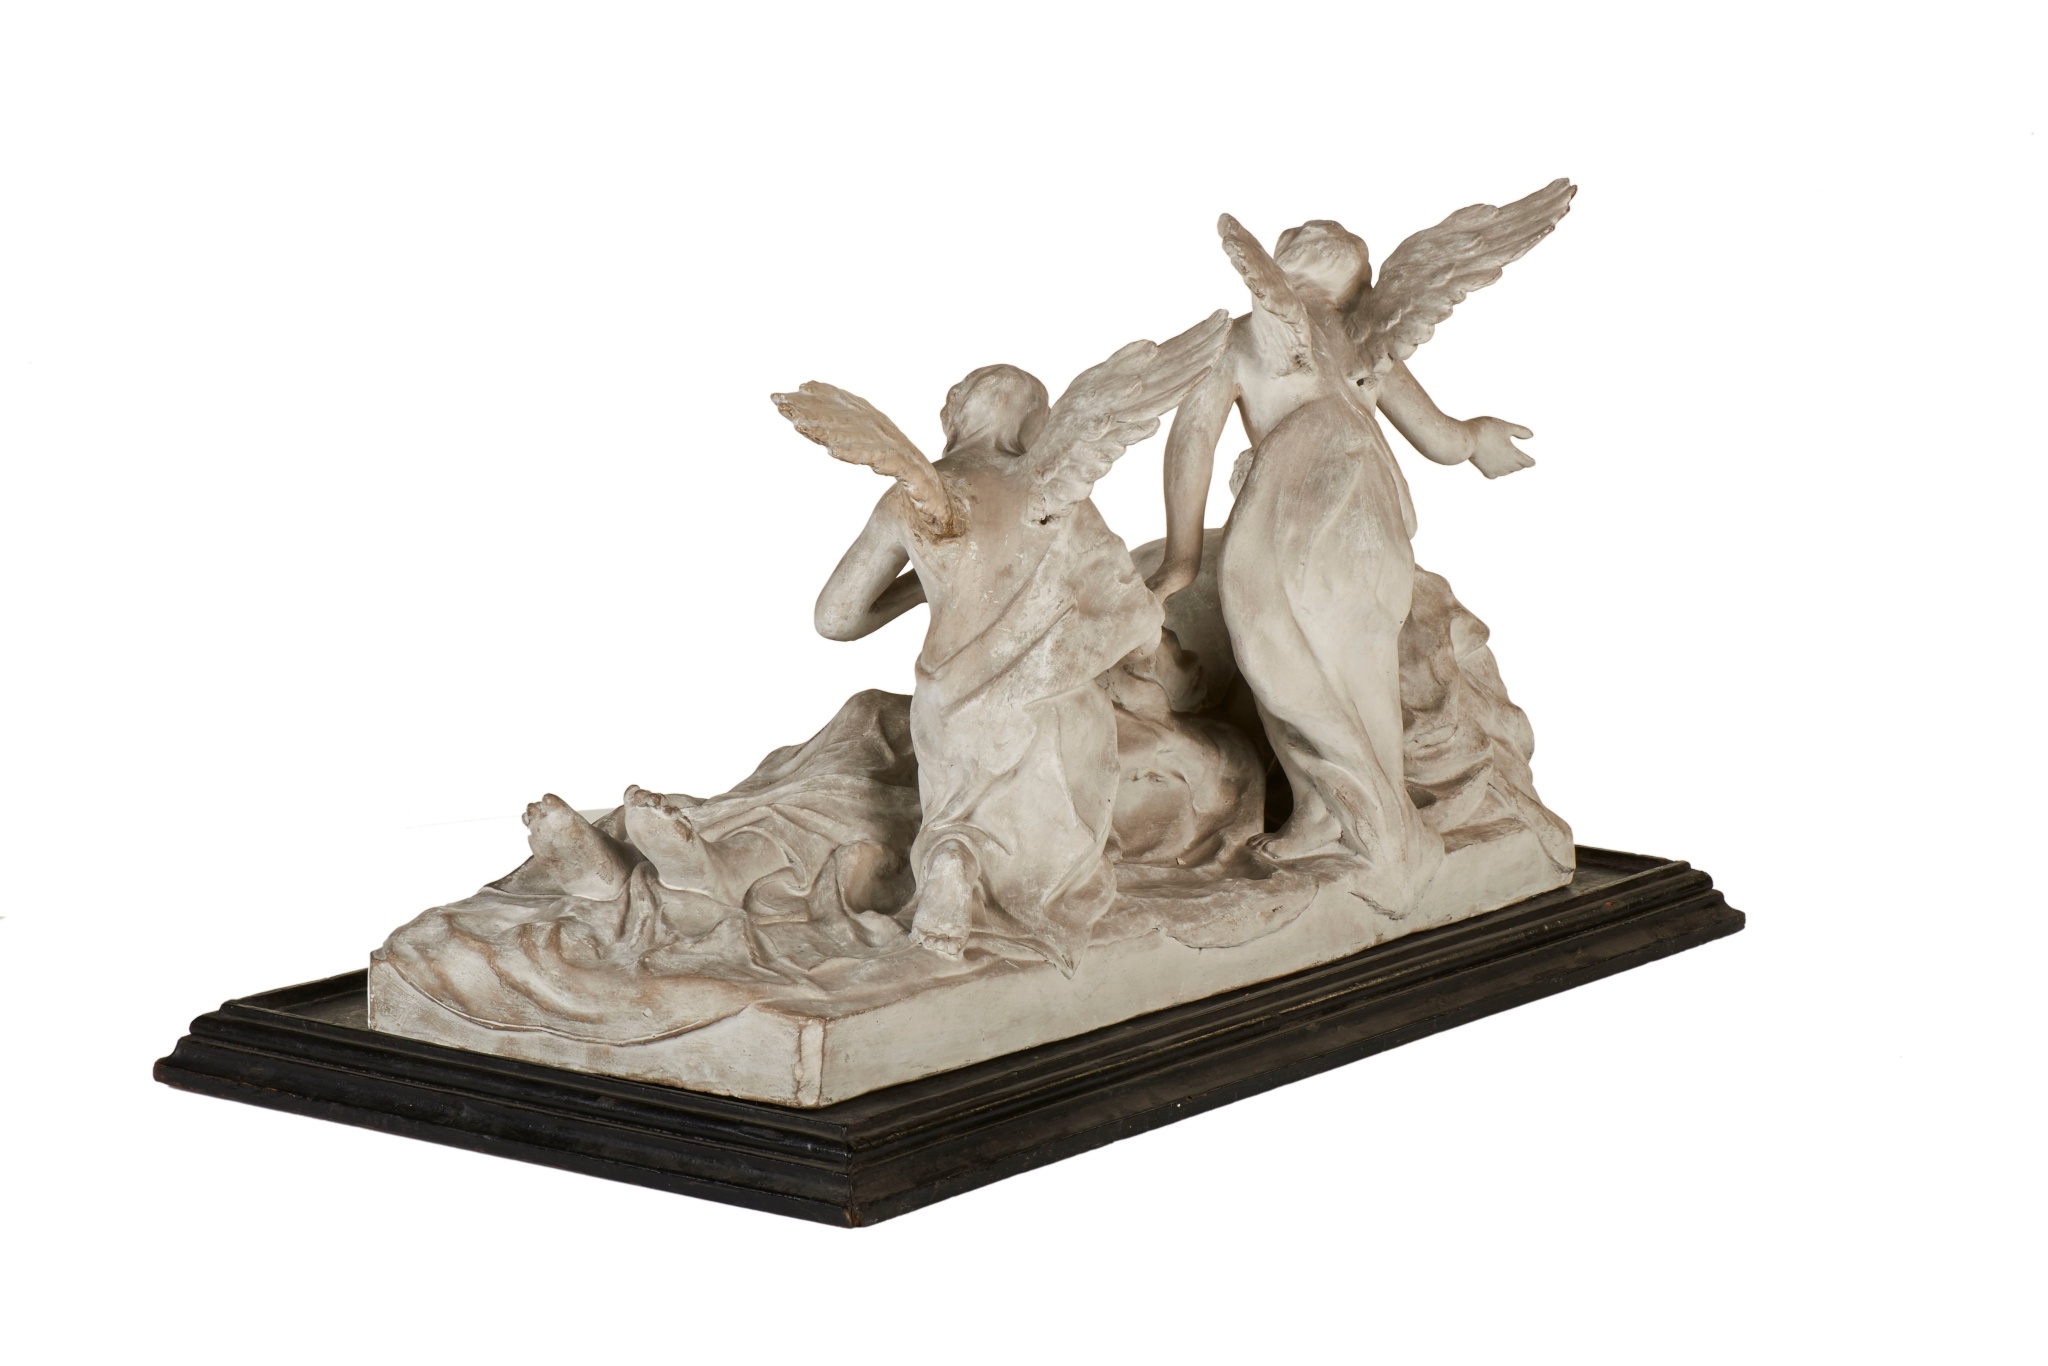 Modèle réduit d'un groupe : le Christ au tombeau adoré par deux anges